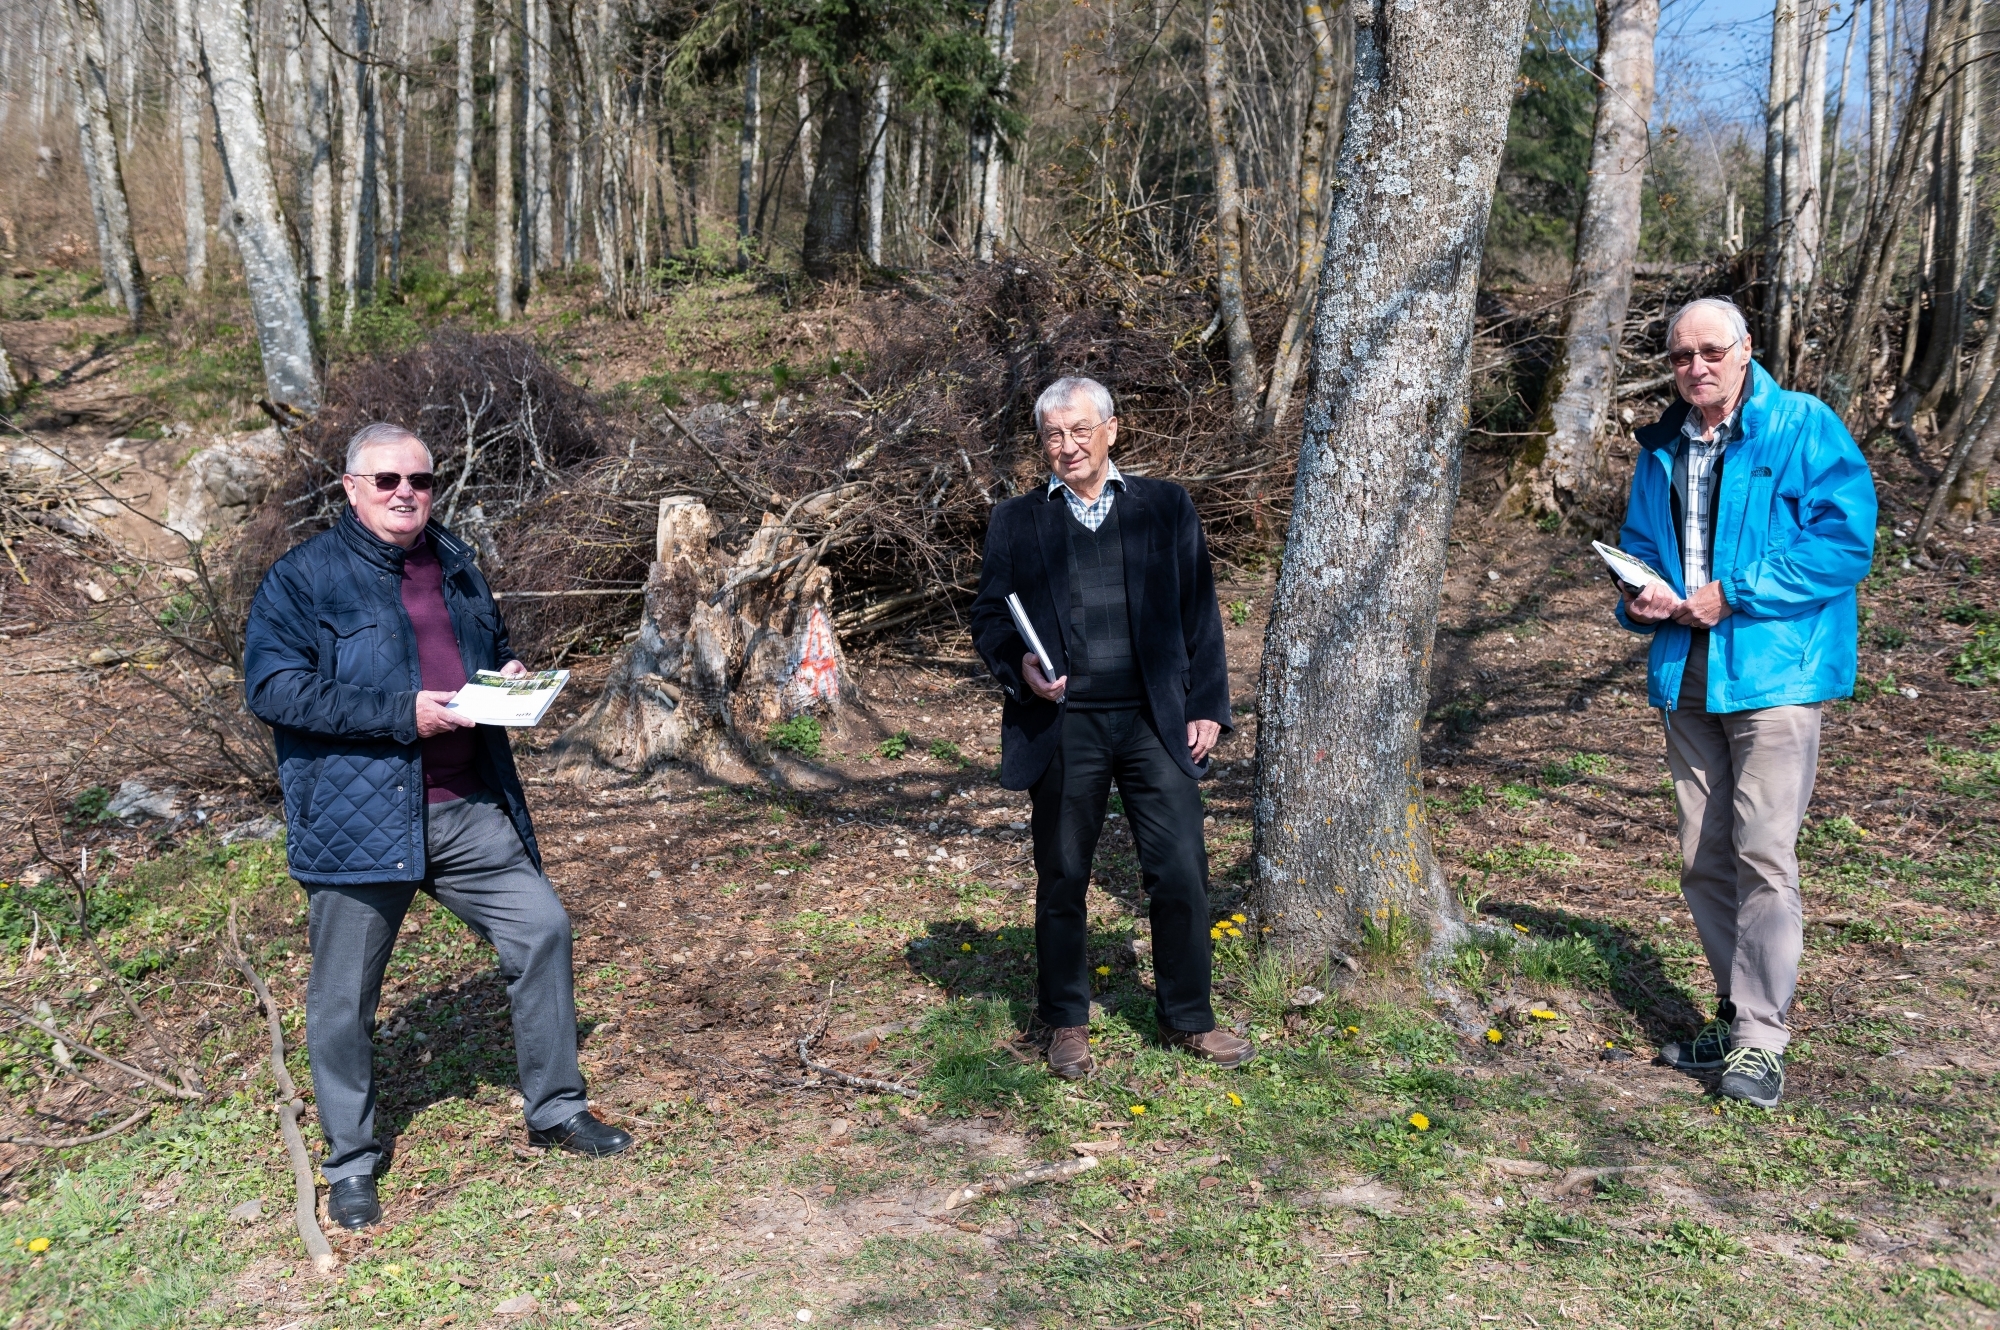 De gauche à droite: Jean Wenger, président de l'association ForêtNeuchâtel, Michel Schlup, rédacteur de la Nouvelle revue neuchâteloise, et Stéphane JeanRichard, coordinateur du projet. Ici, à l'abri forestier de Malvilliers.